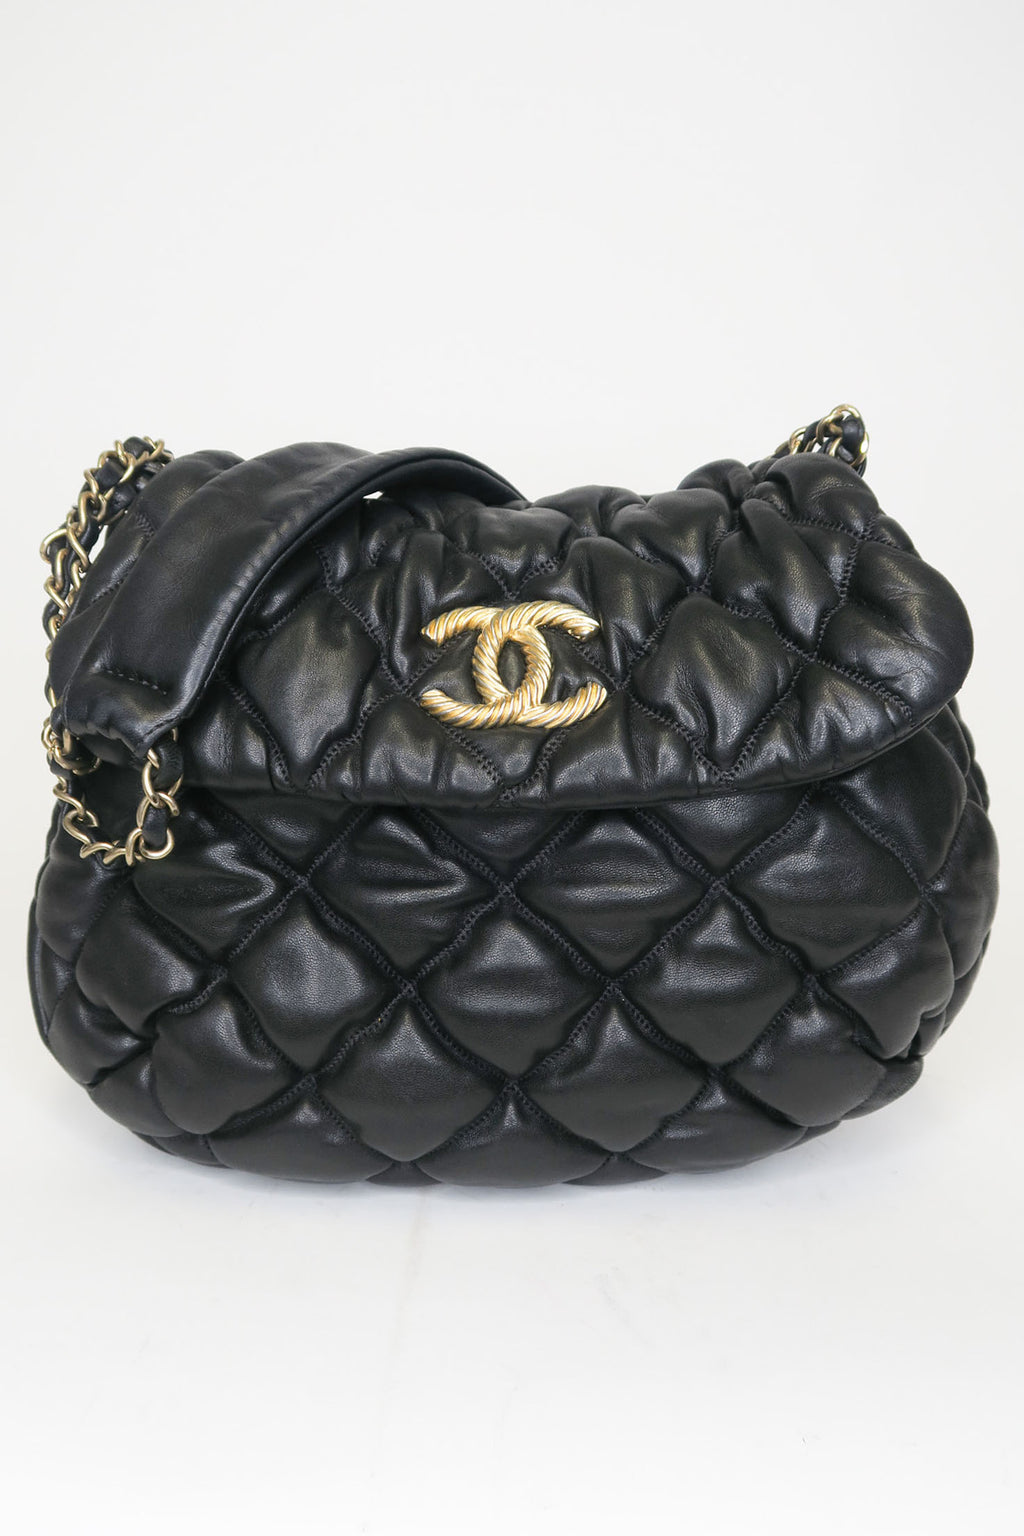 Chanel Paris-Moscou Bubble Quilt Flap Bag – The Find Studio